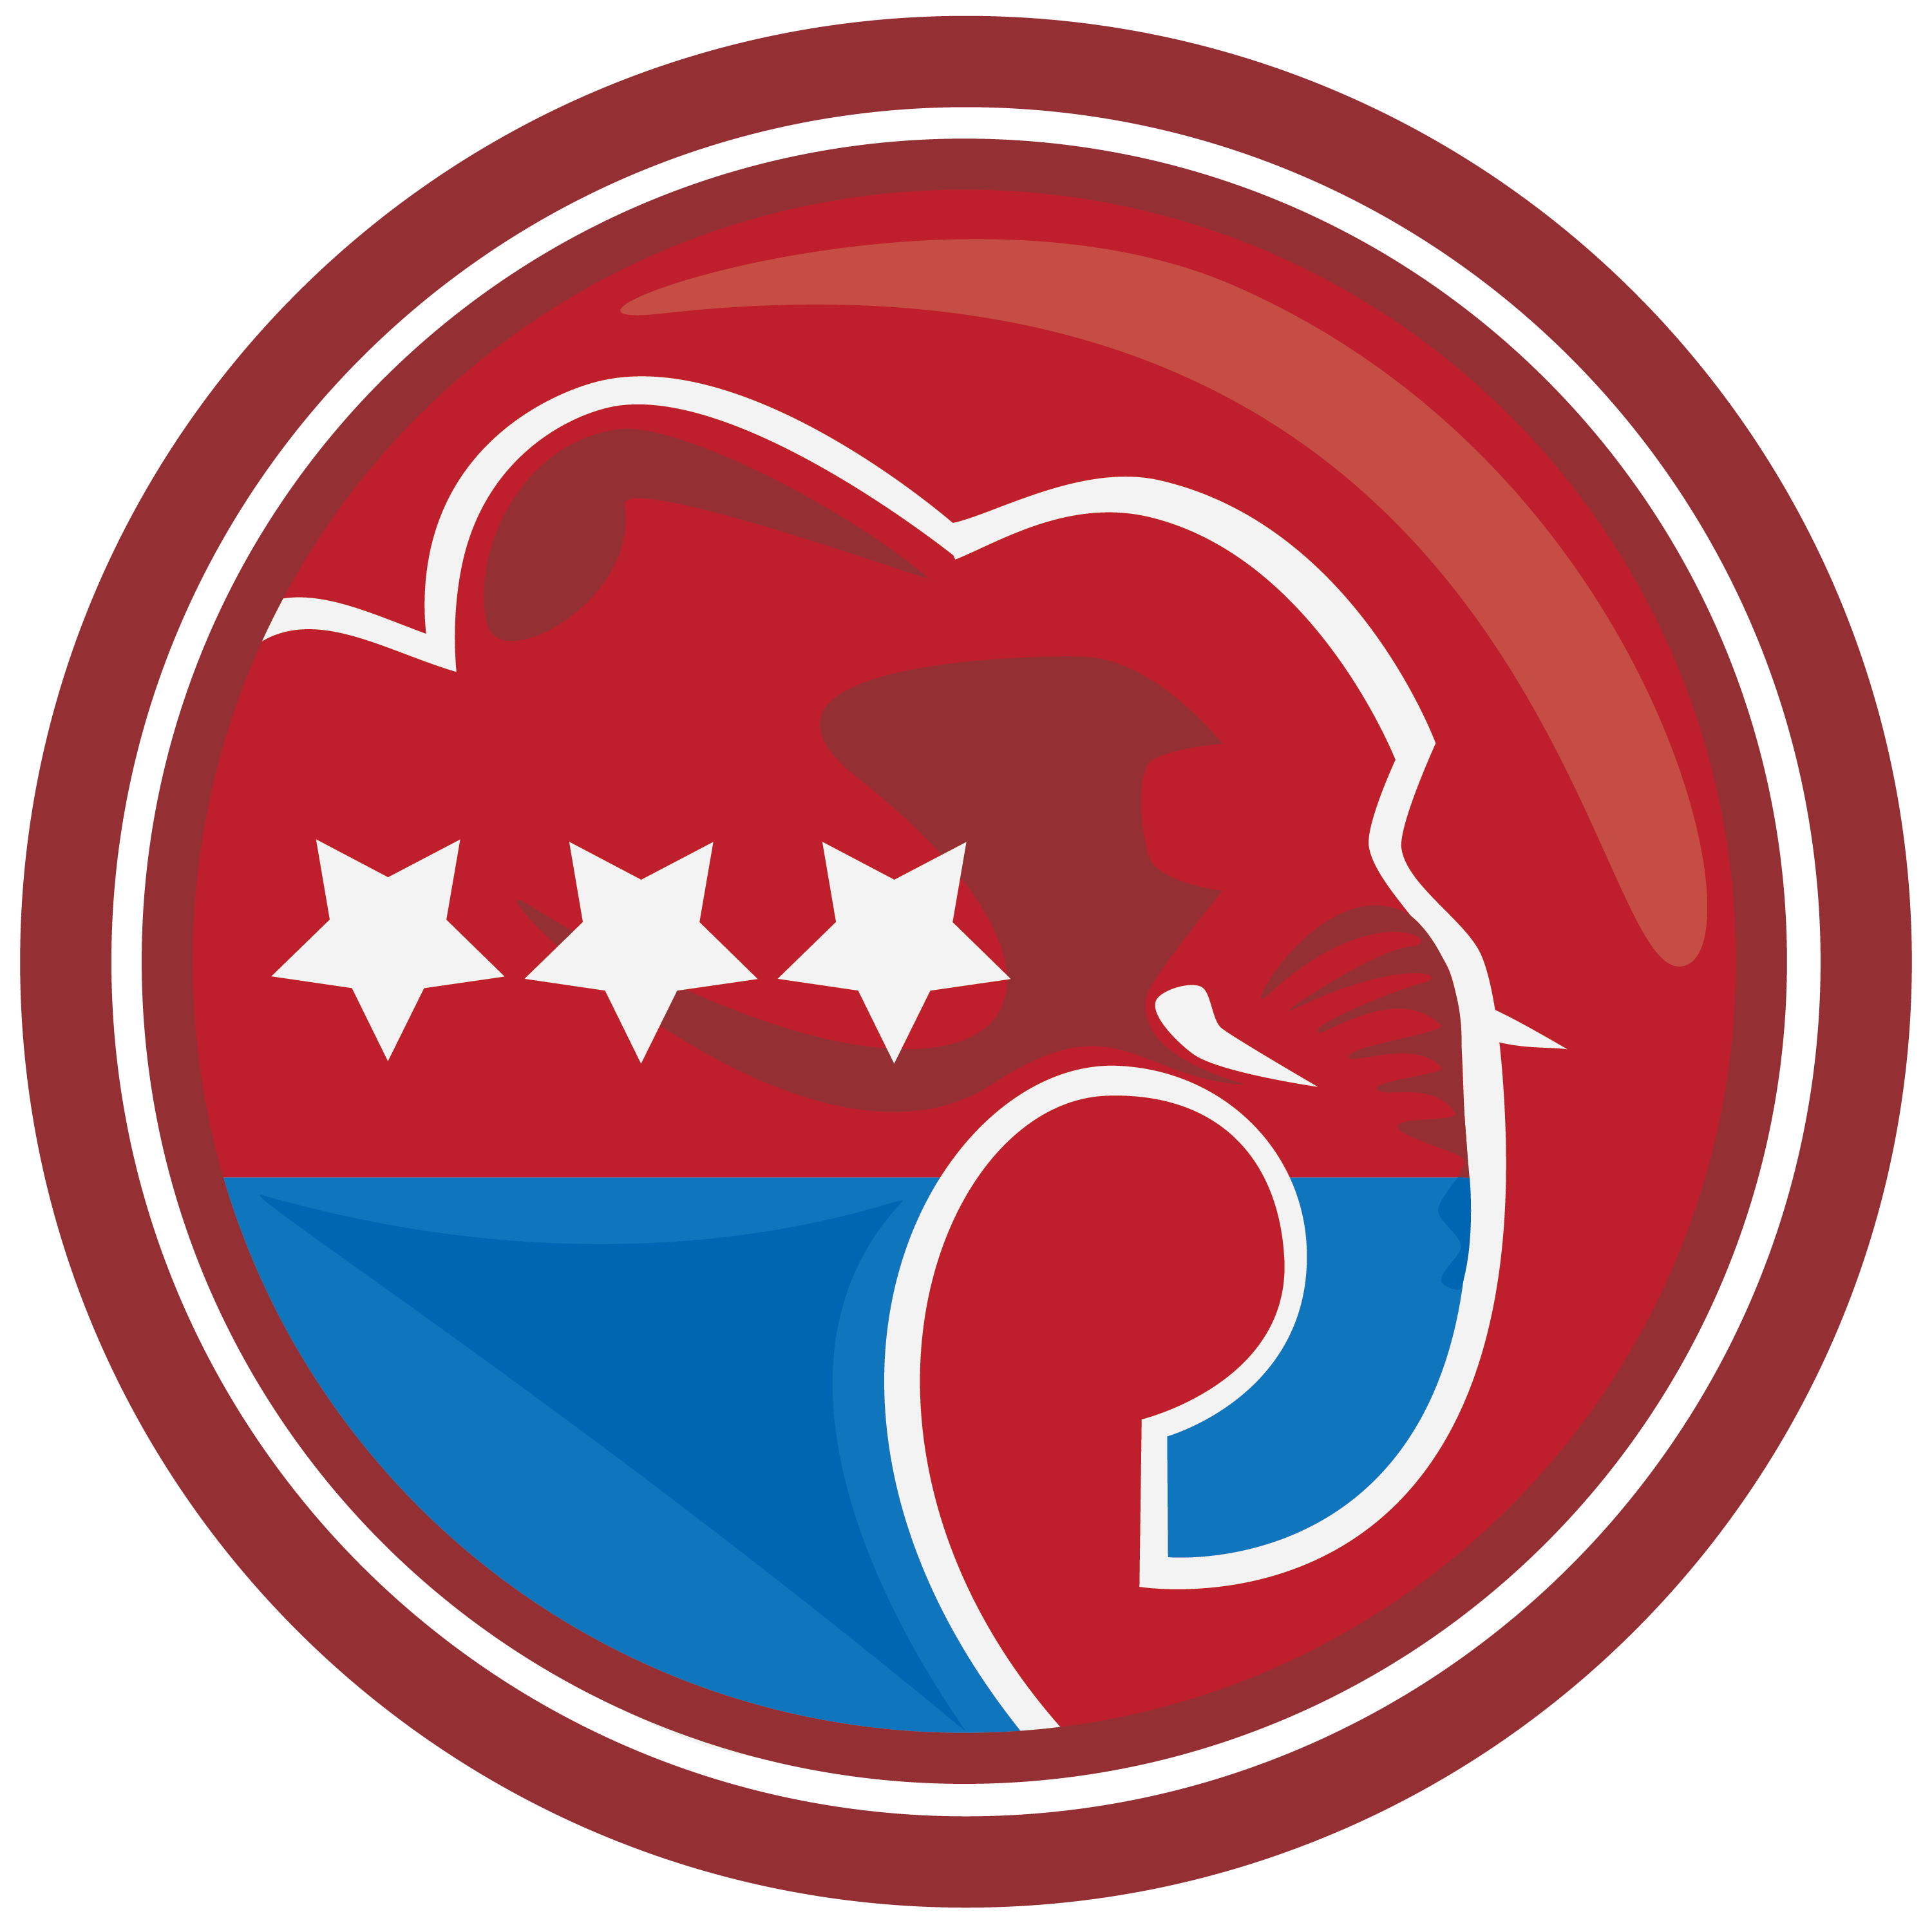 Republican Elephant Picture   Clipart Best